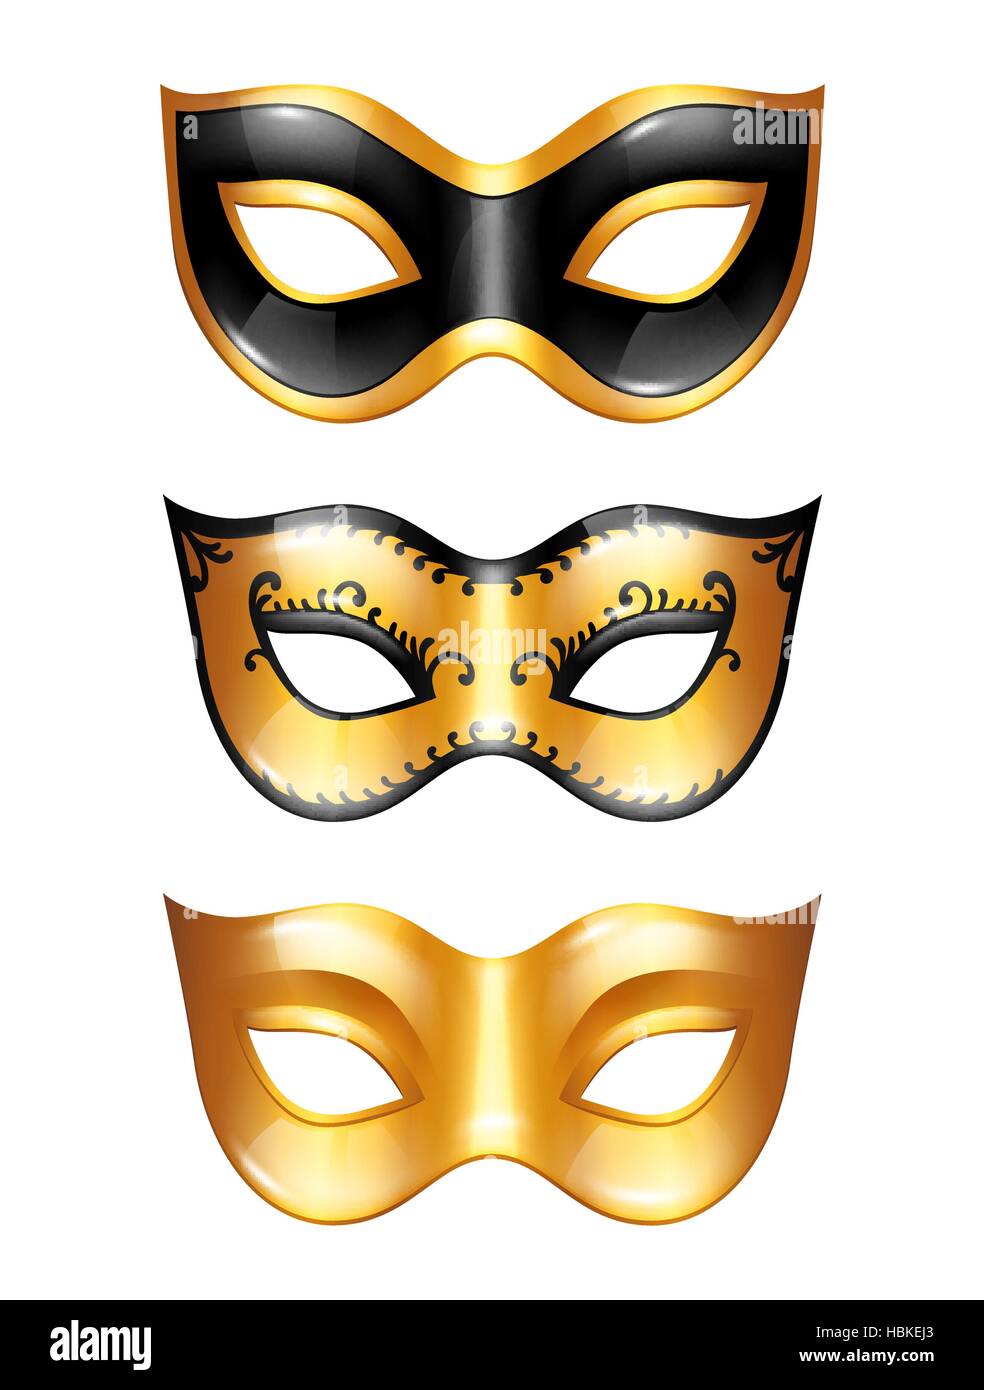 Jeu de masques vénitiens carnaval d'or sur fond blanc Image Vectorielle  Stock - Alamy